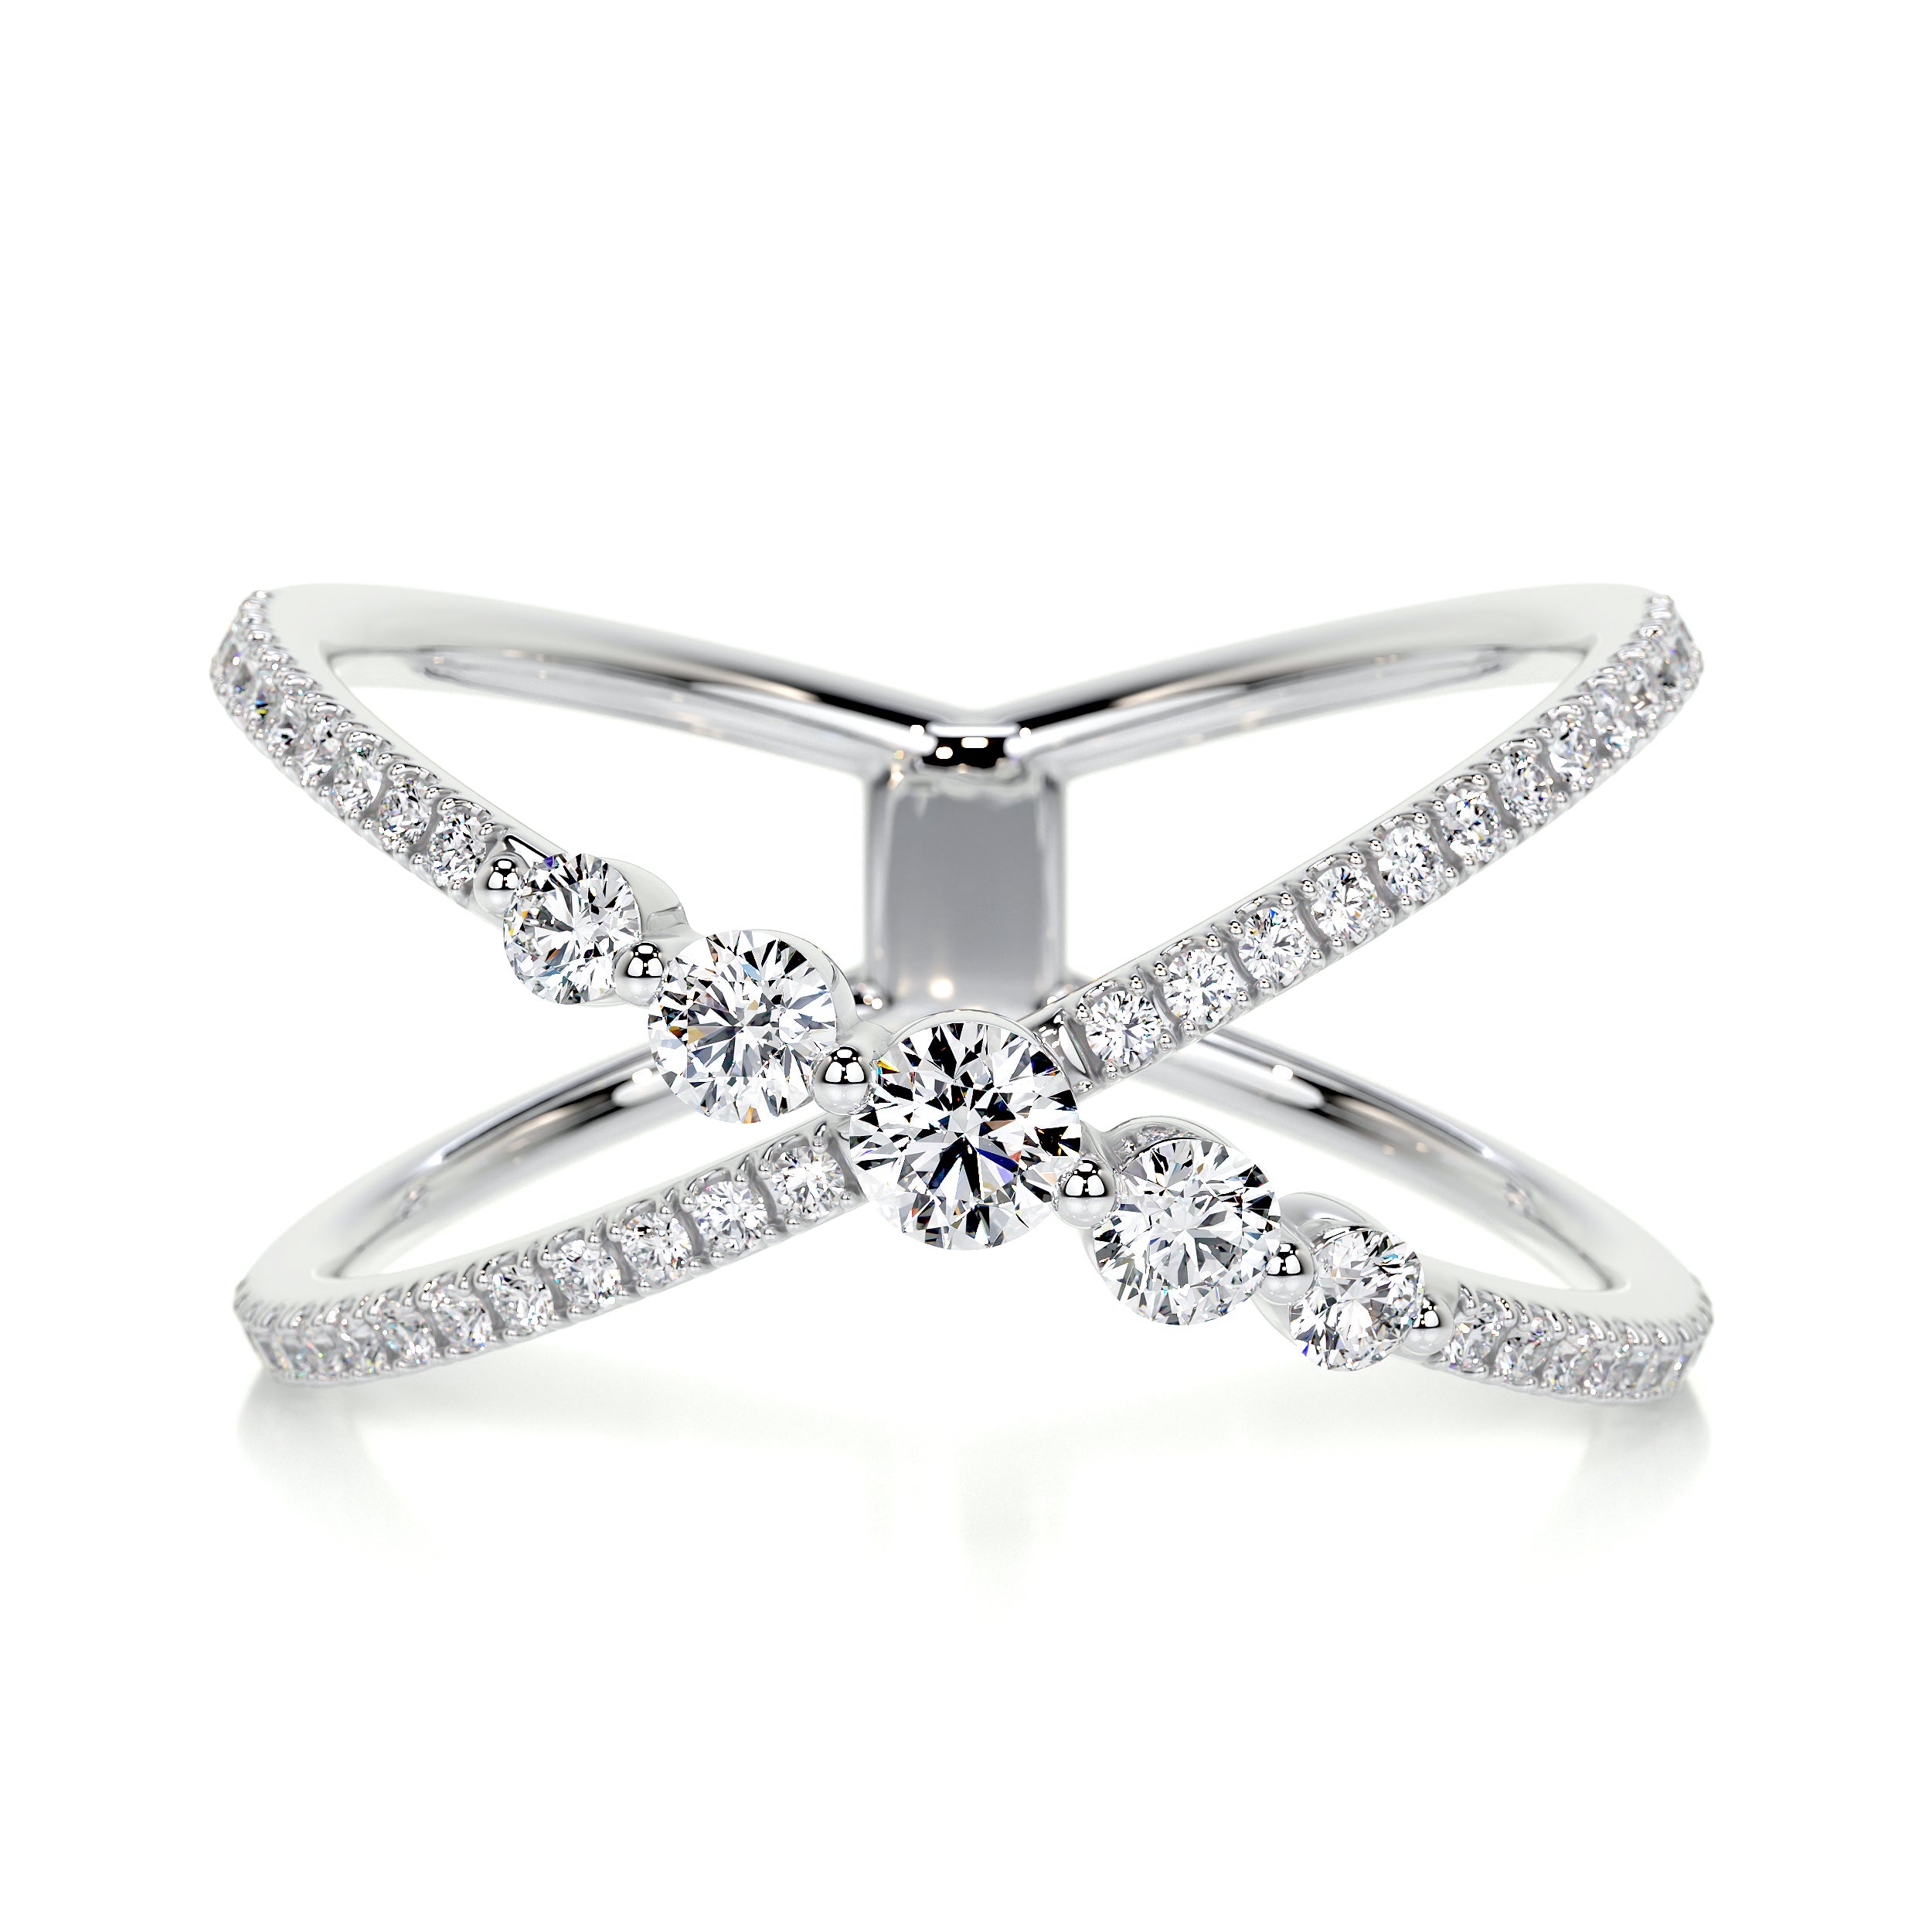 Iris Fashion Diamond Ring   (0.42 Carat) -18K White Gold